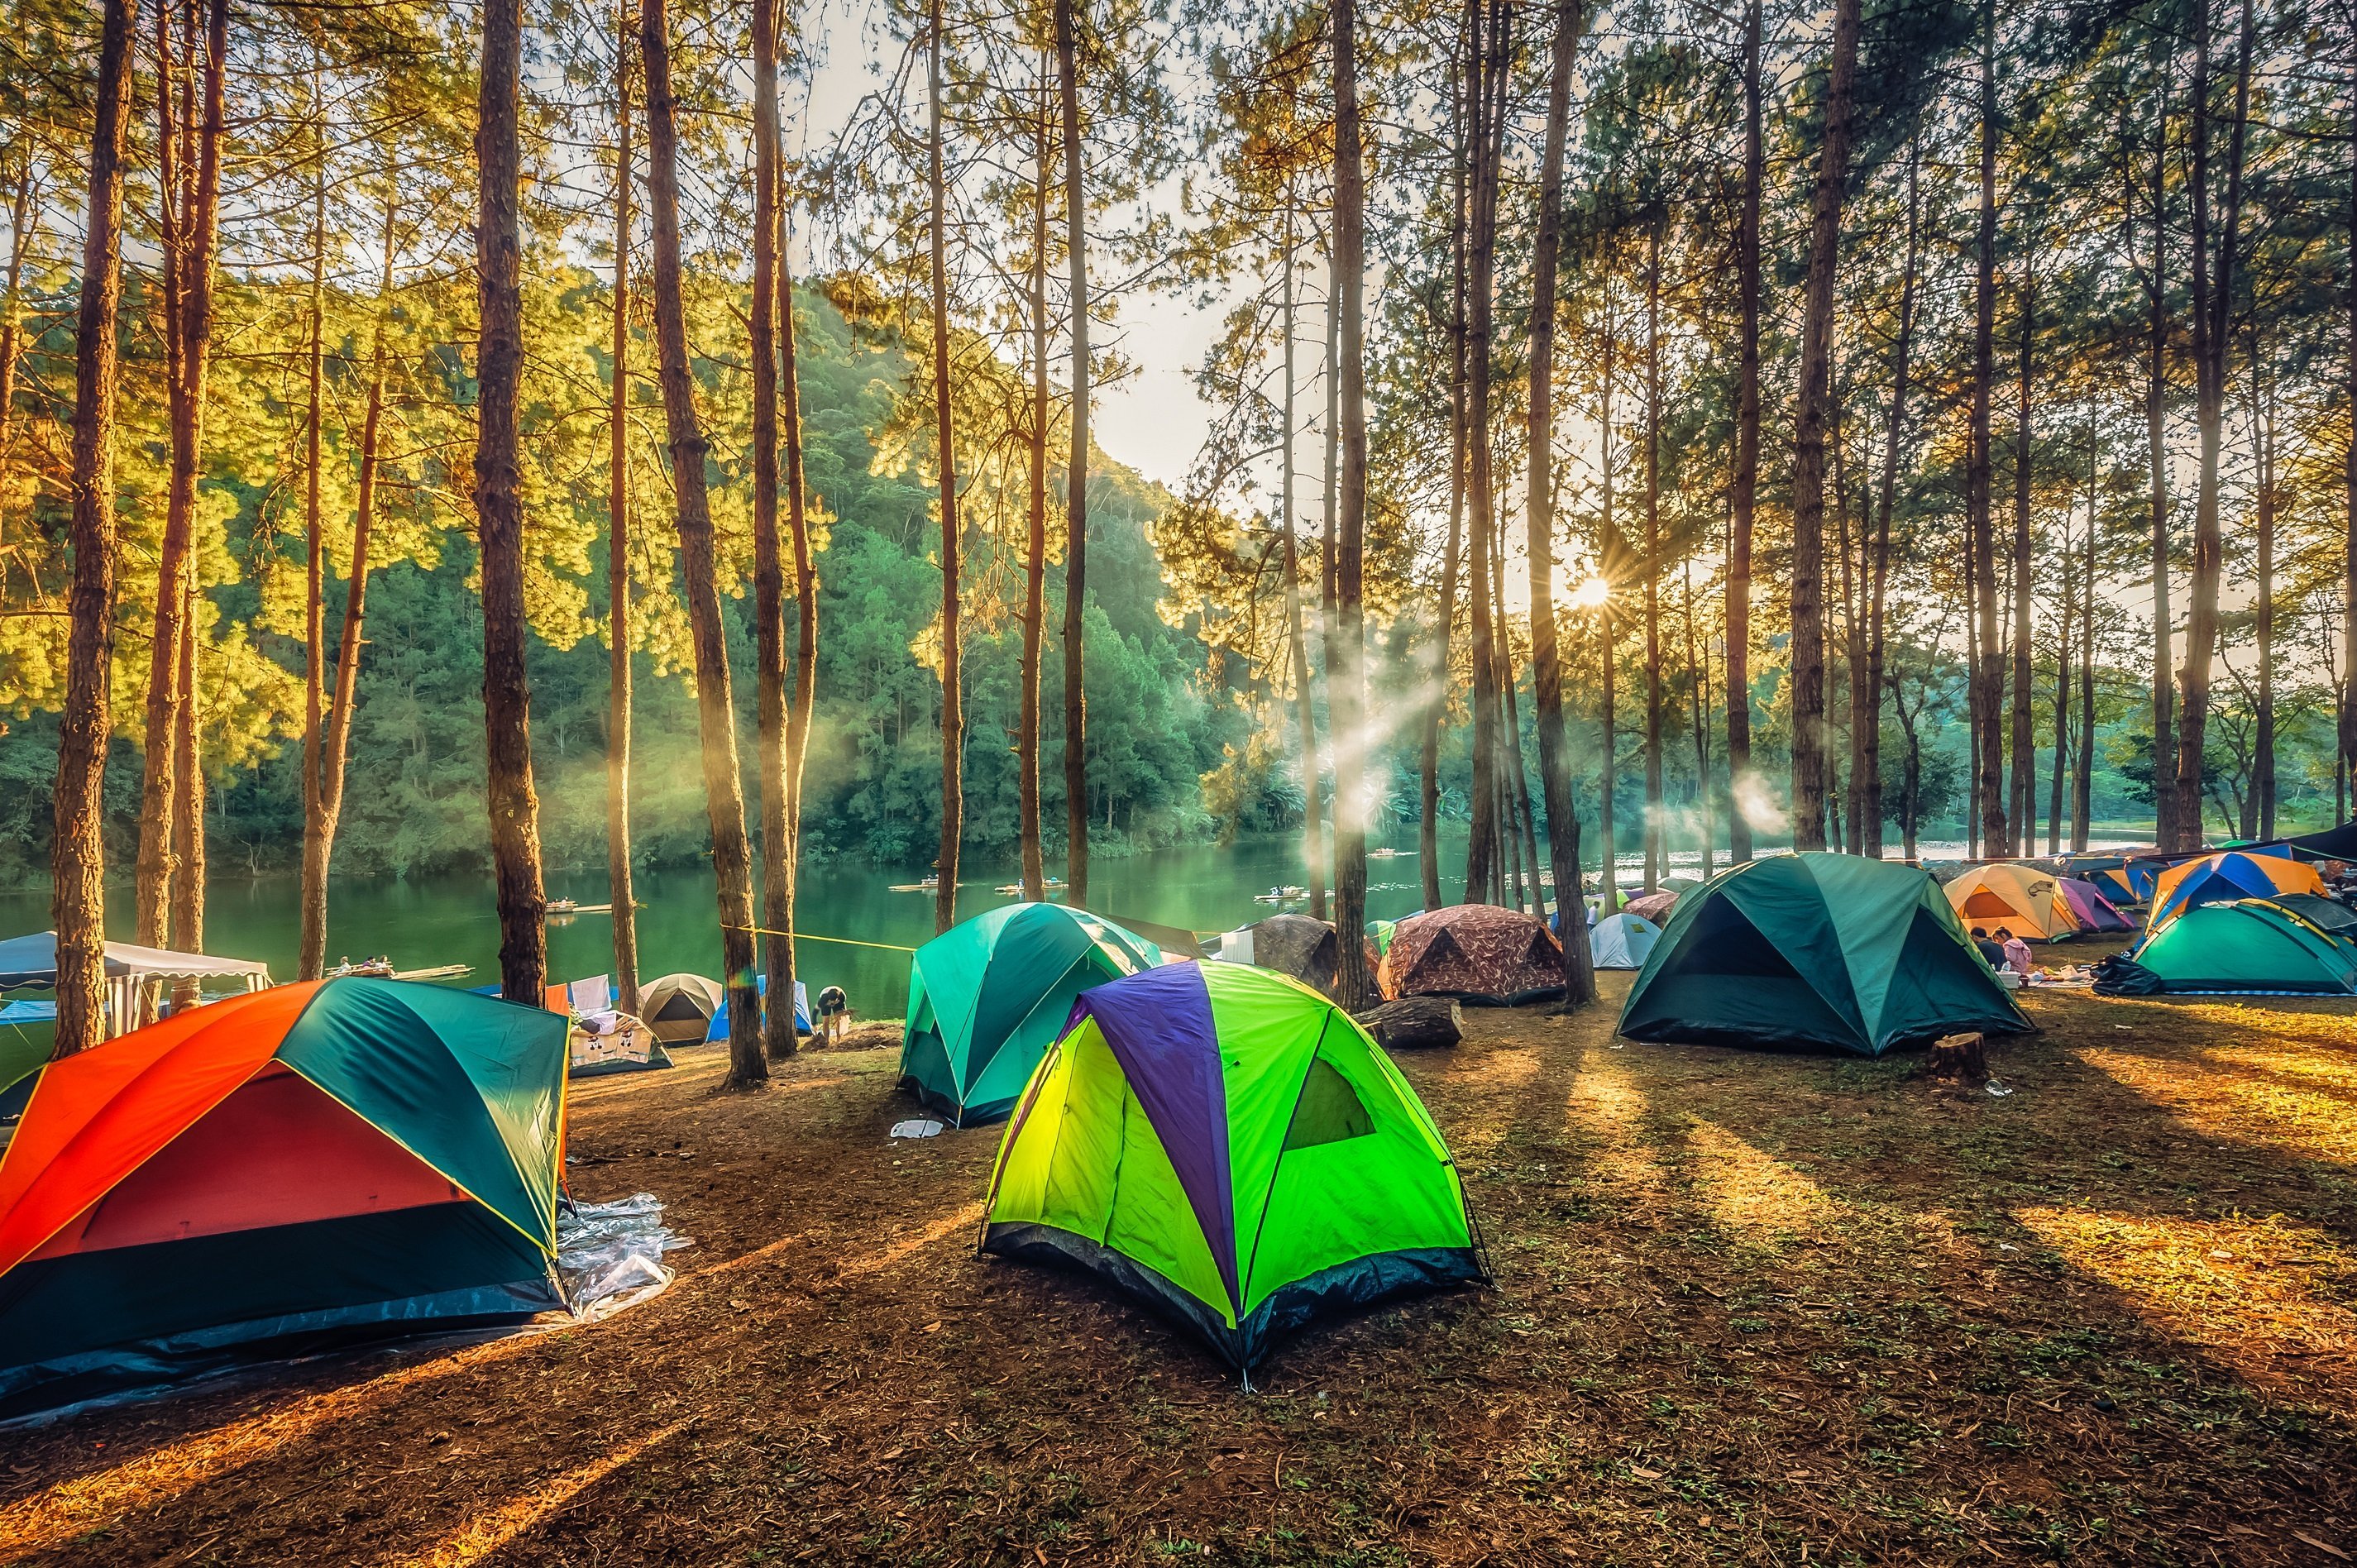 Www camp. Поляна Увильды кемпинг. Палатка на природе. Палаточный лагерь. Туристическая палатка на природе.